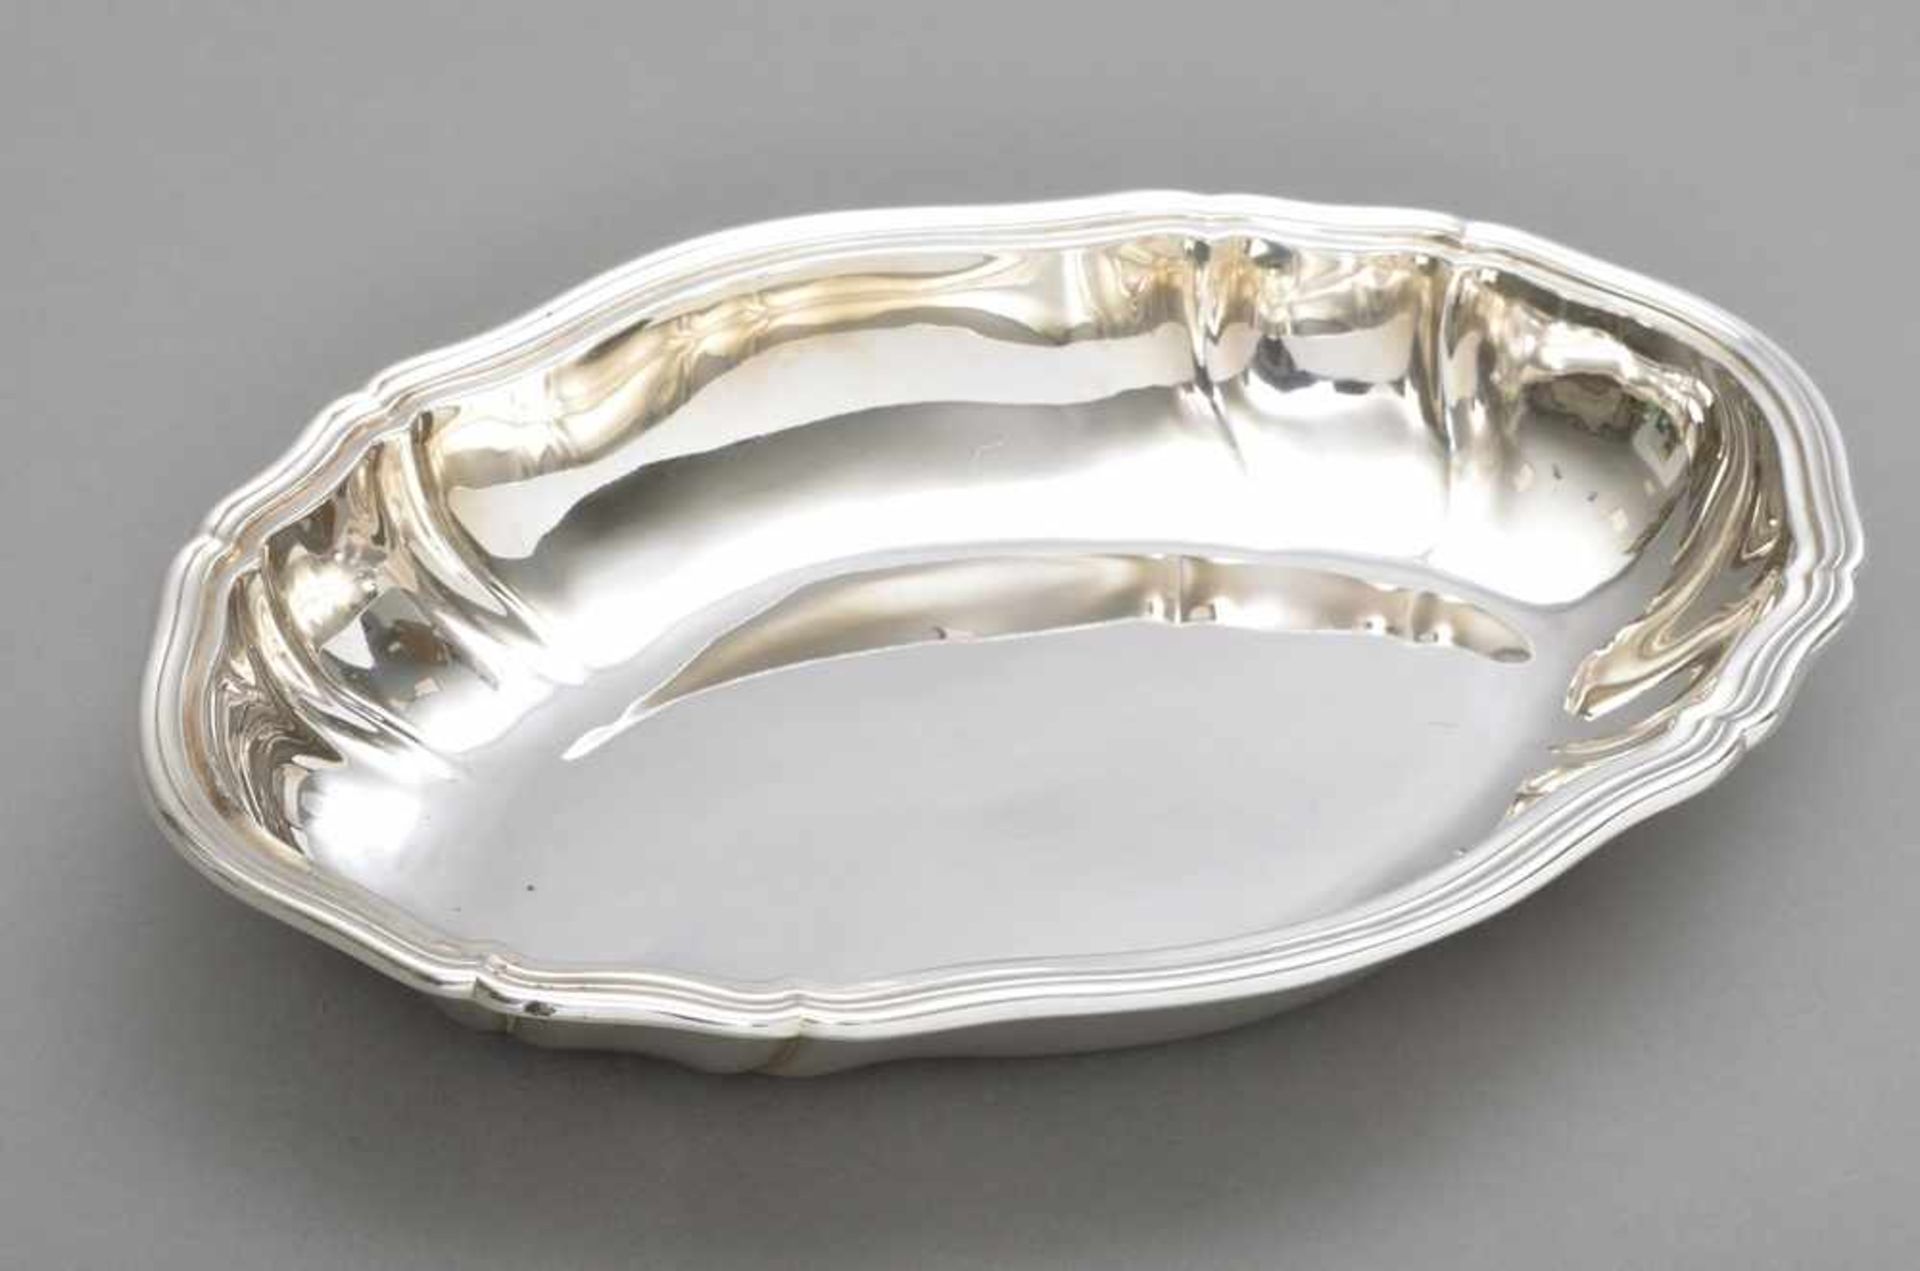 Ovale Schale "Chippendale", Gebr. Kühn, um 1930, Silber 800, 315g, 26x19cm